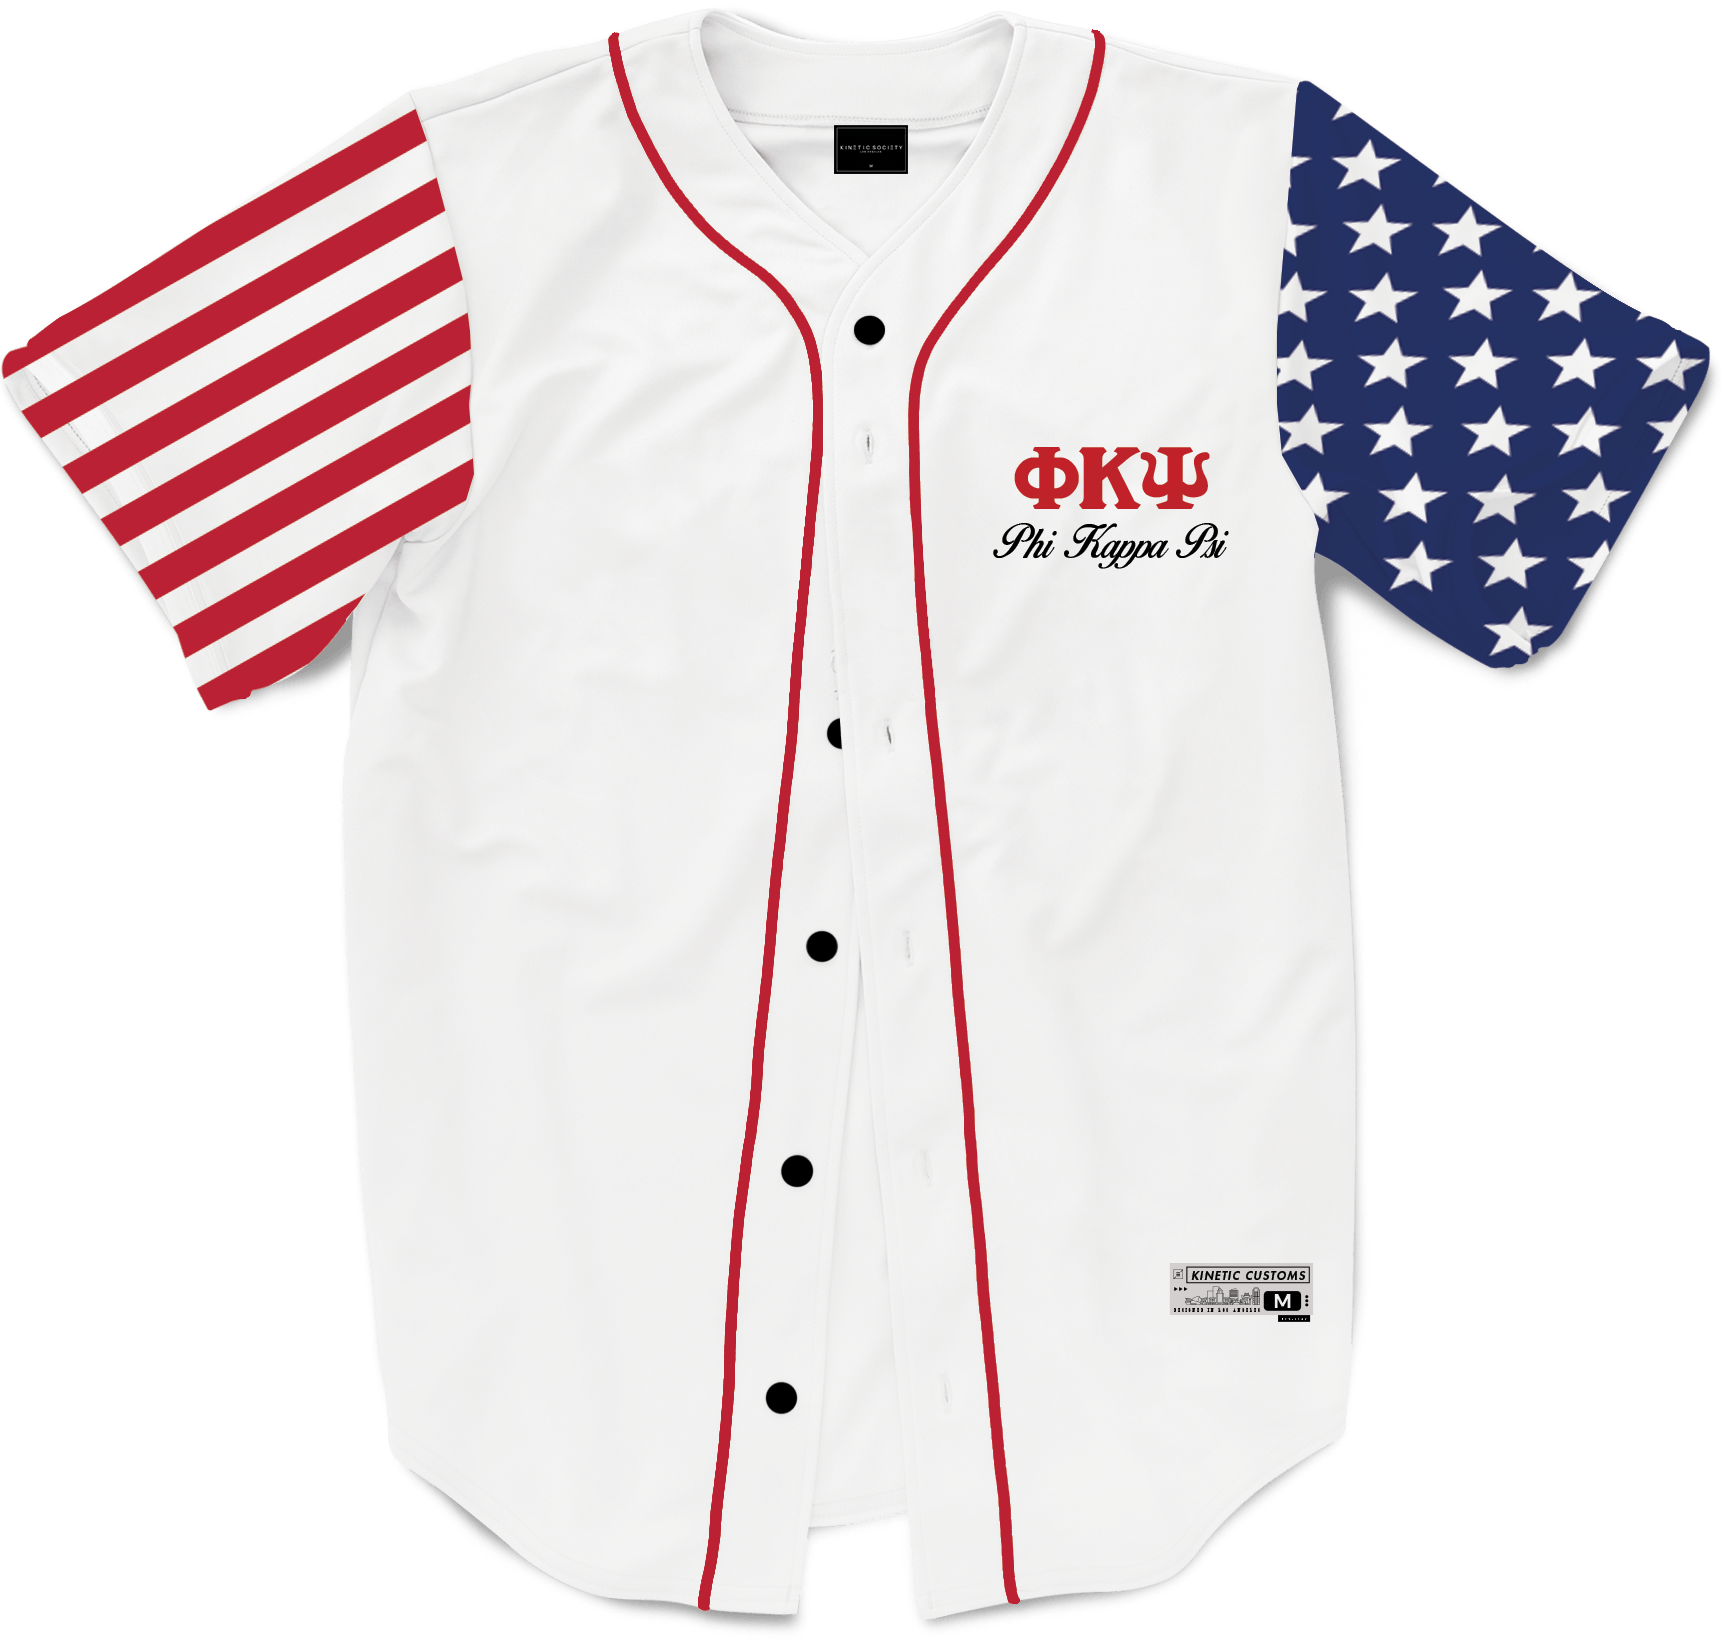 Baseball Jerseys - USA Drinking Team